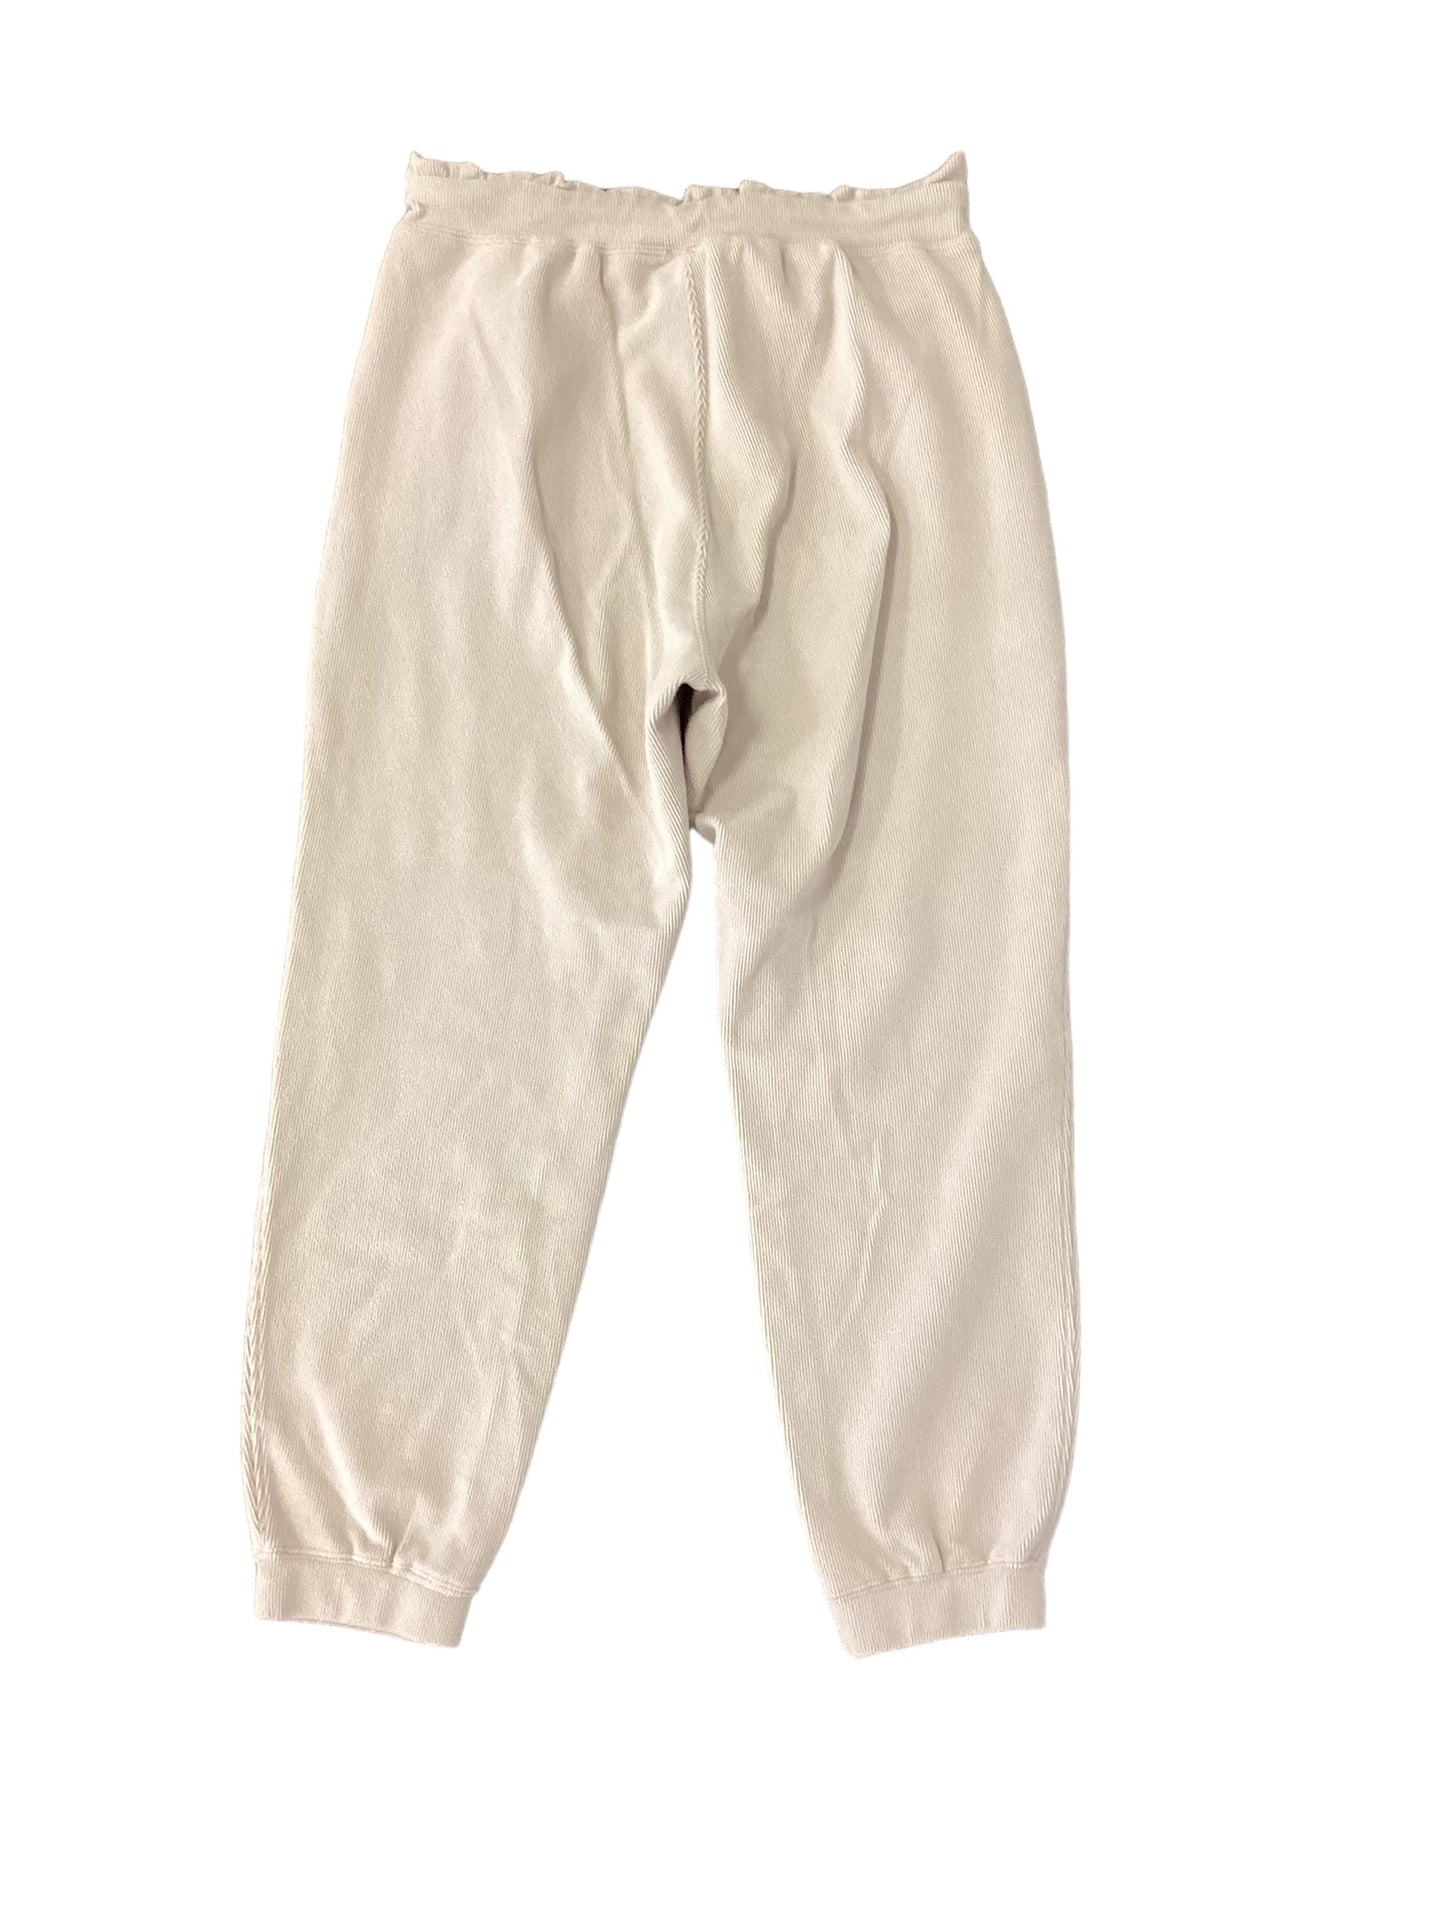 Pants Joggers By Mono B  Size: M